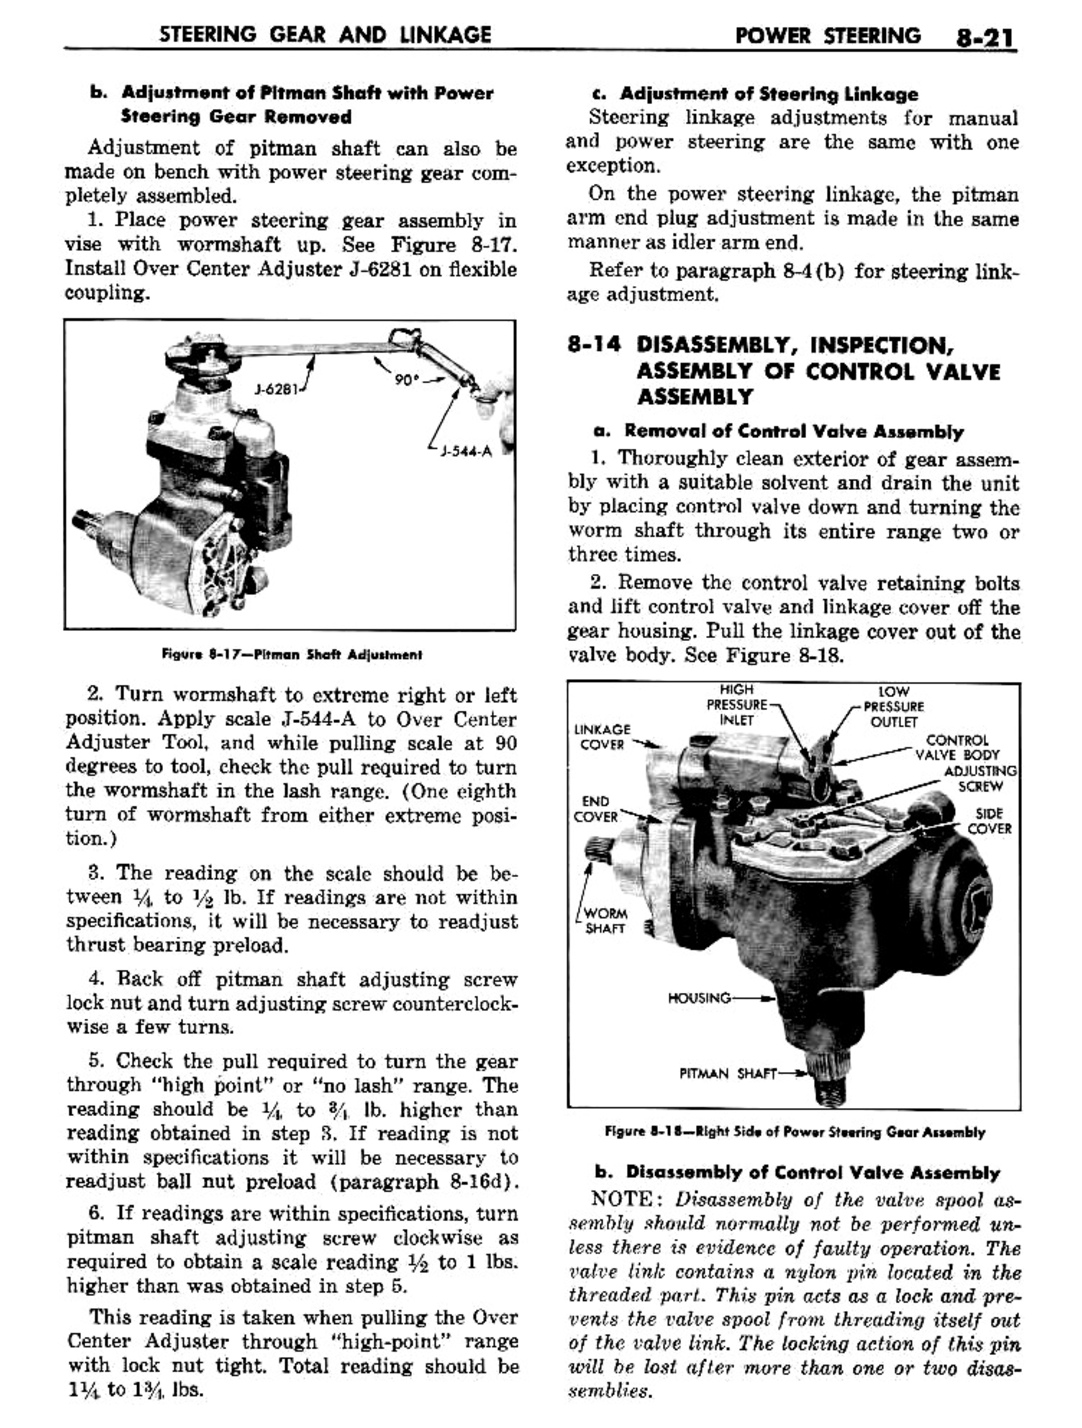 n_09 1957 Buick Shop Manual - Steering-021-021.jpg